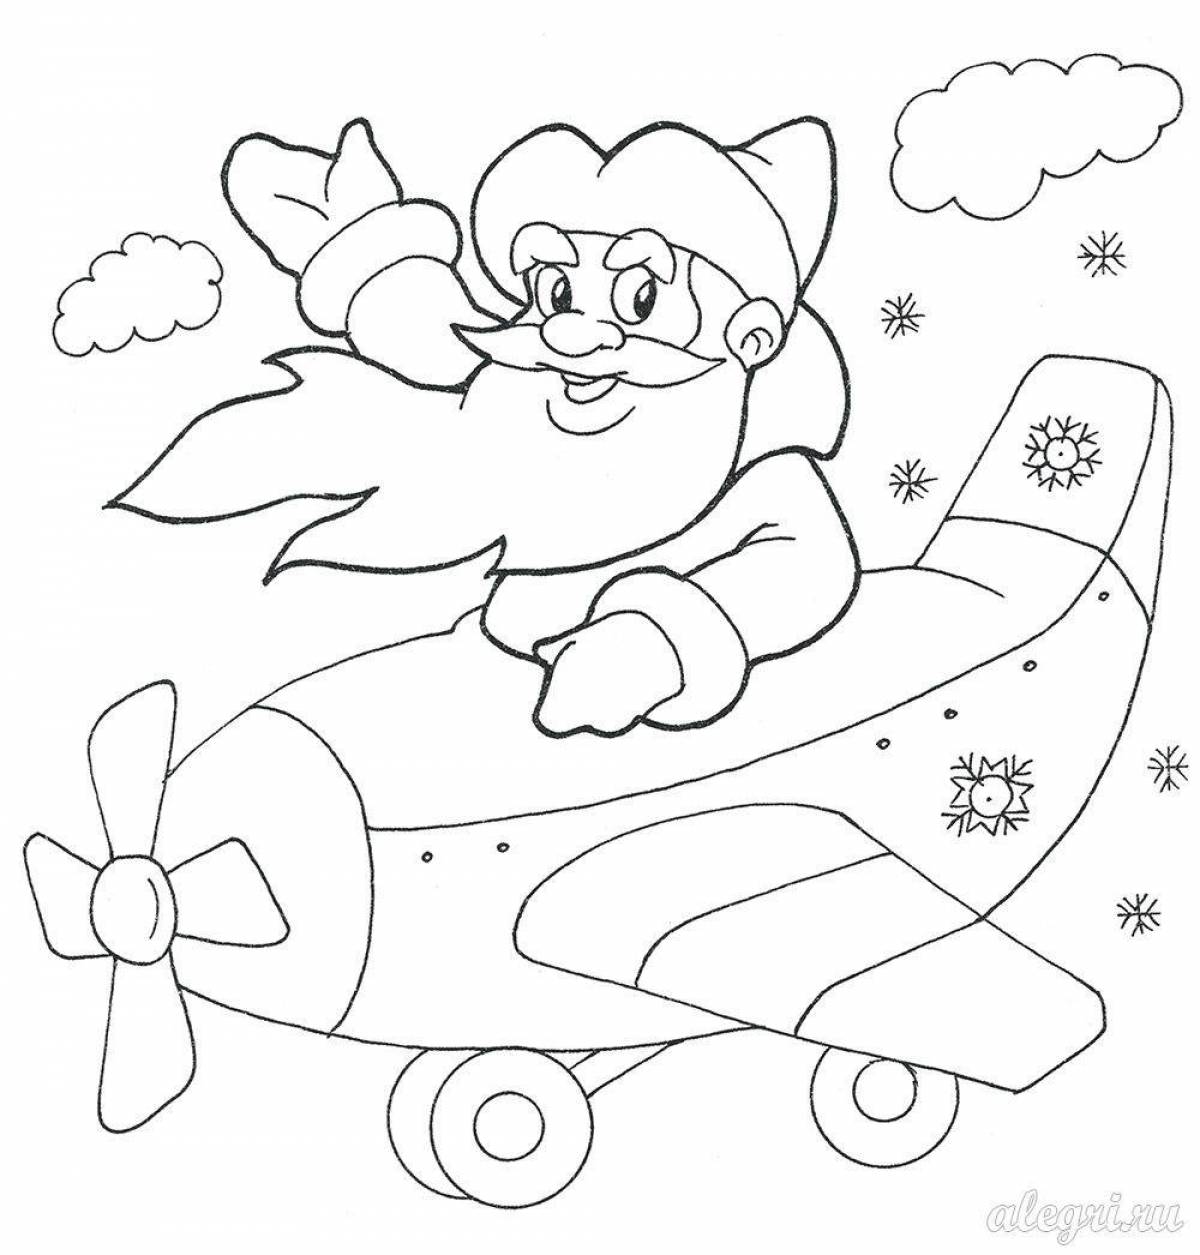 Раскраска Снежинка для детей 6 лет